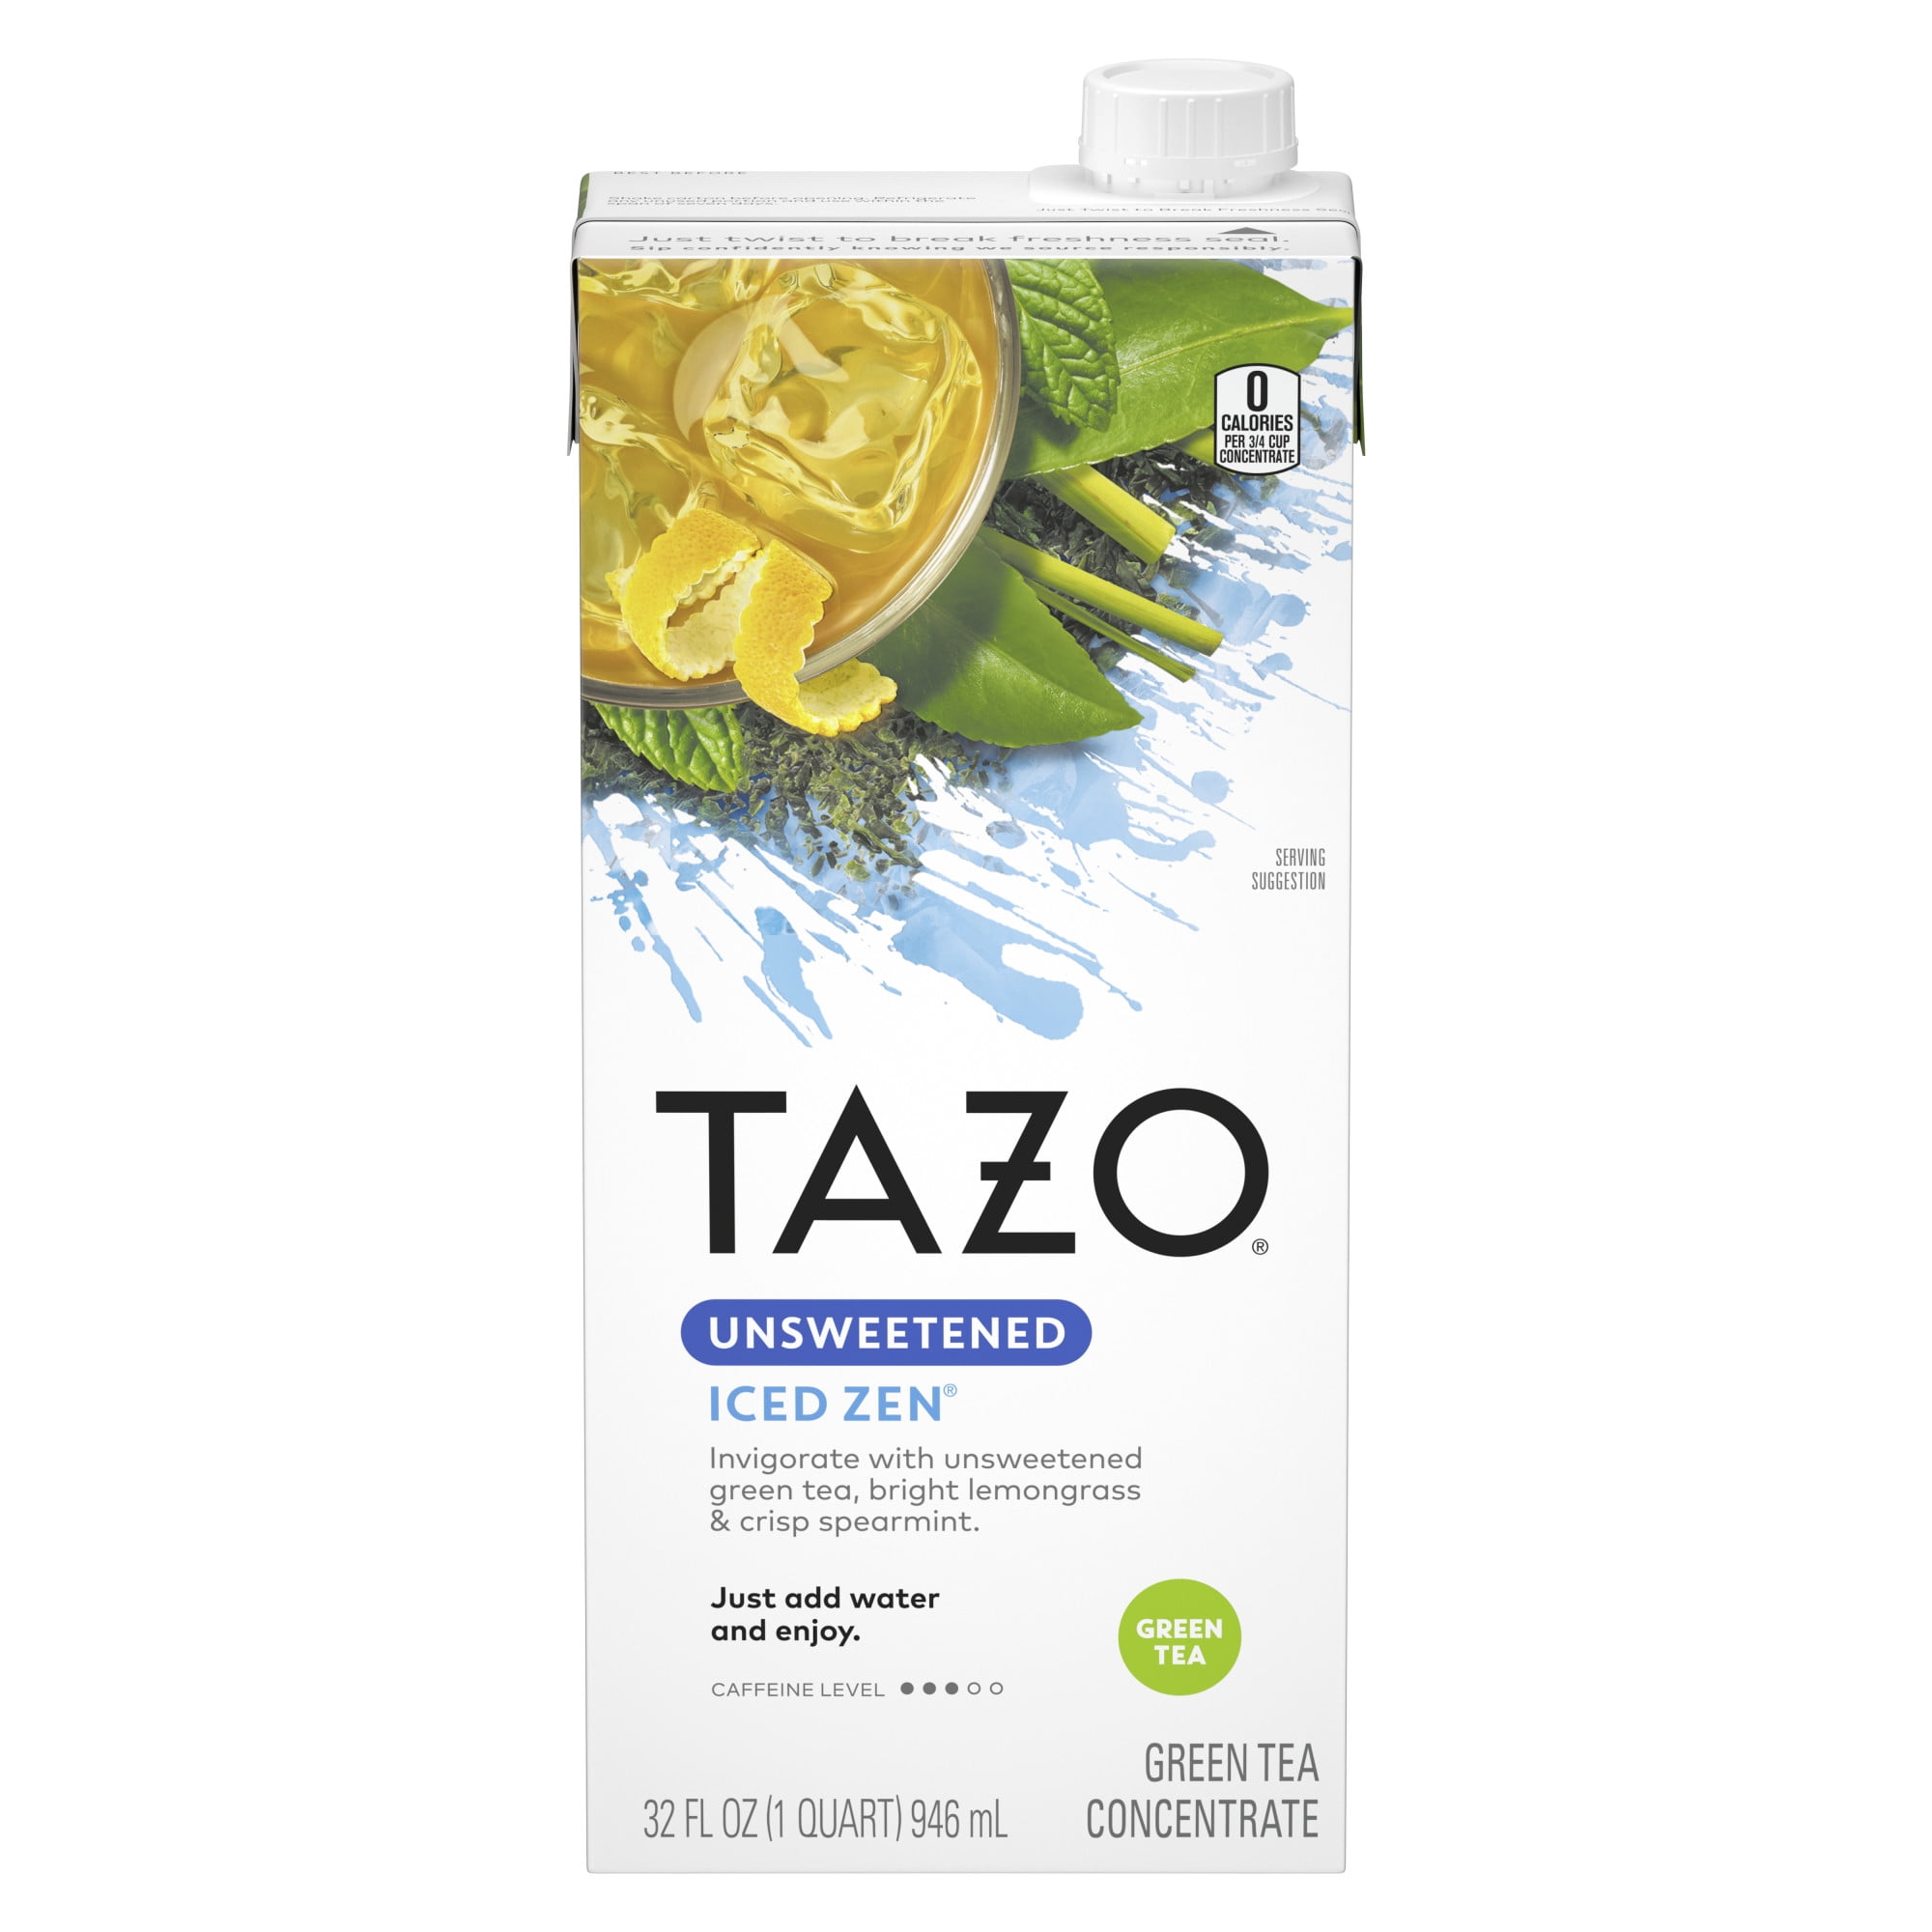 TAZO Zen Iced Tea Concentrate Green Tea, Caffeinated, 32 Oz Carton